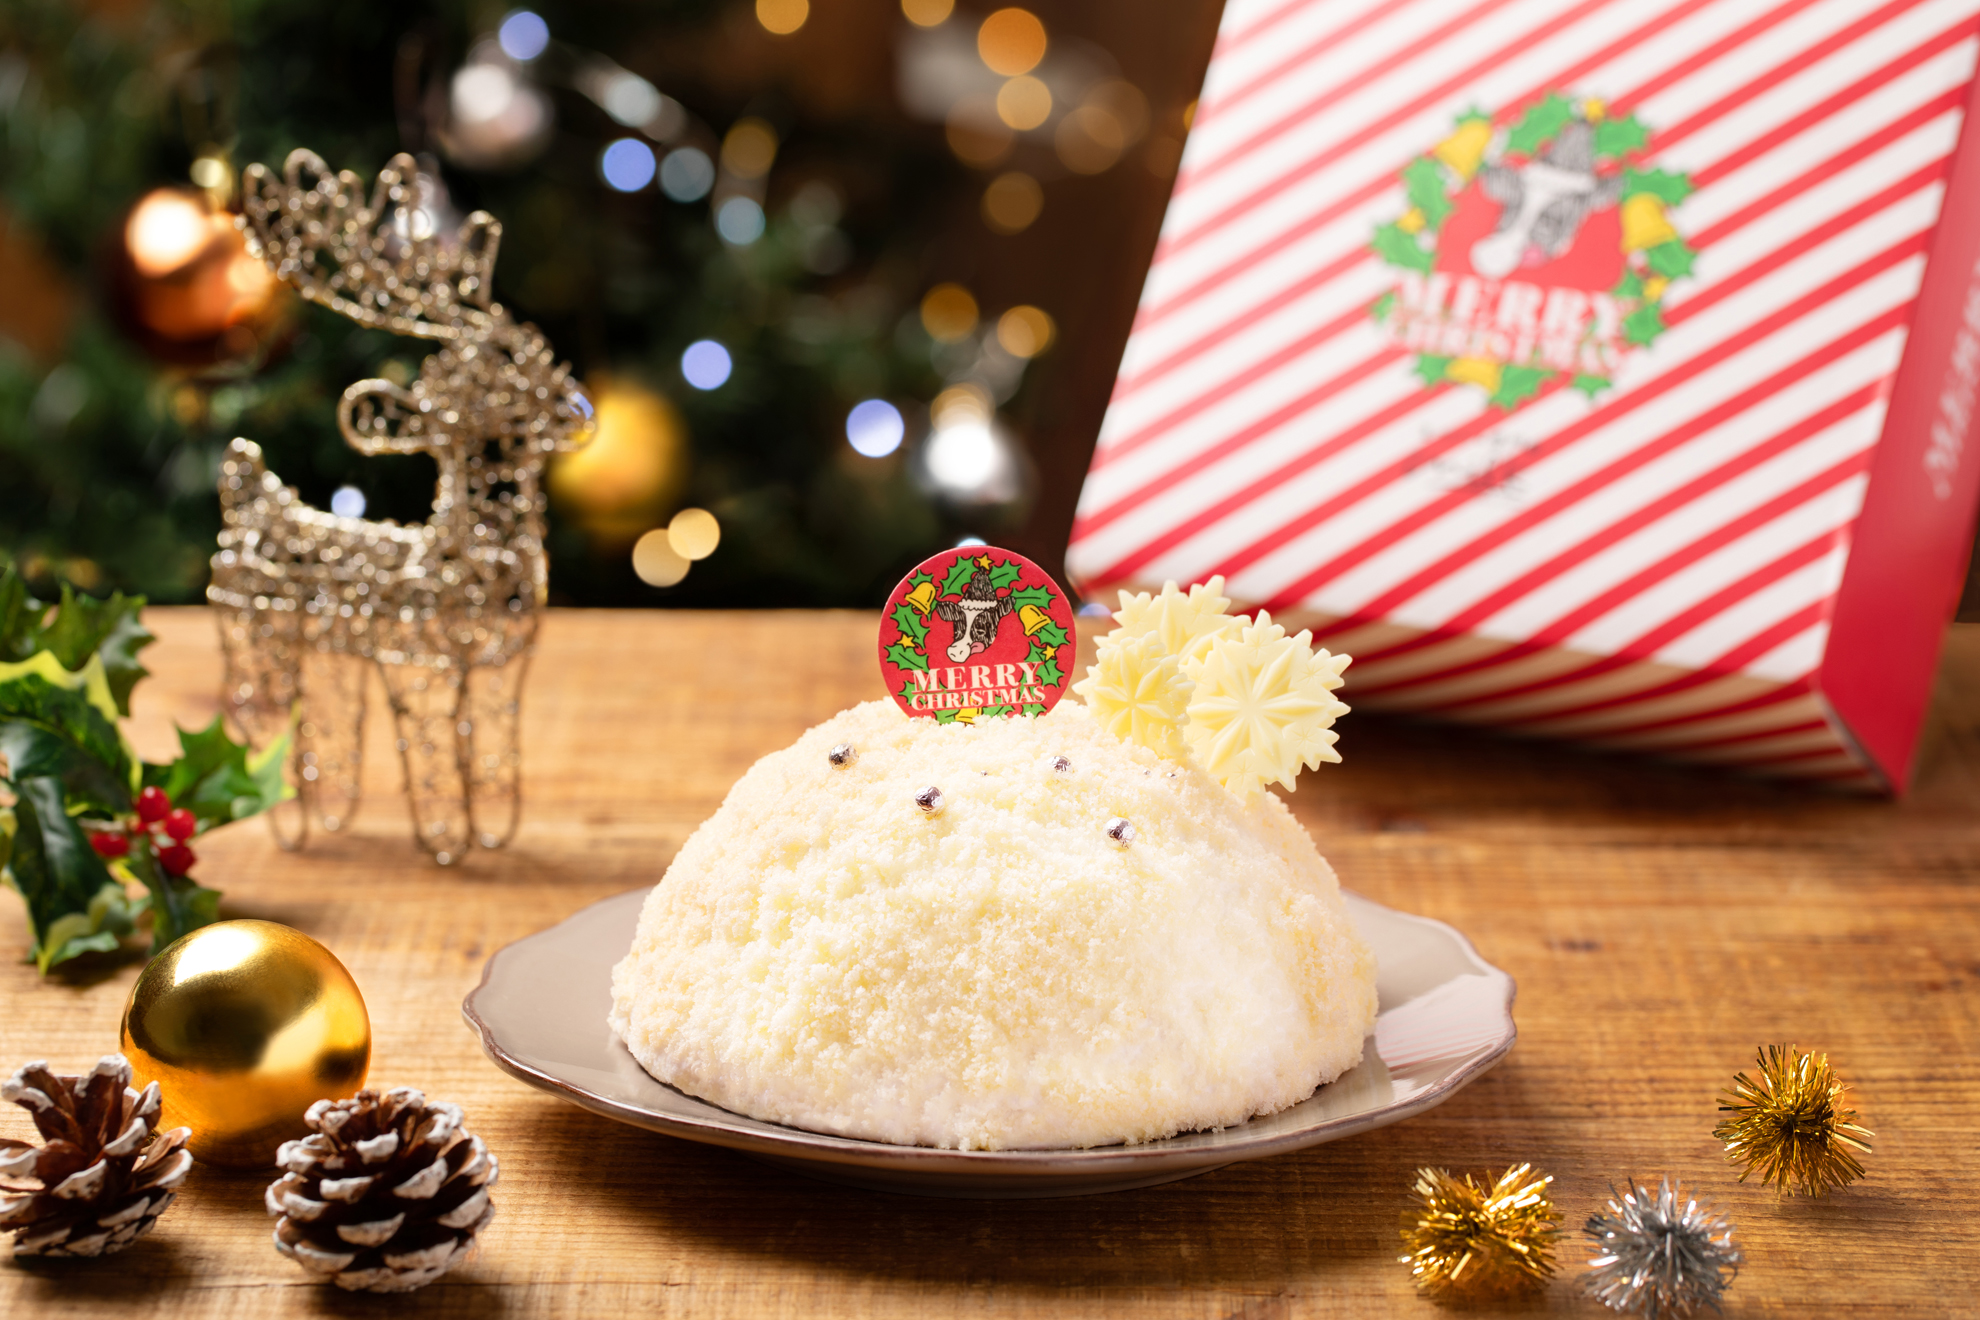 生クリーム専門店ミルク22年クリスマスケーキ予約販売開始のお知らせ オペレーションファクトリー 飲食事業の企画 運営 コンサルティング プロデュース